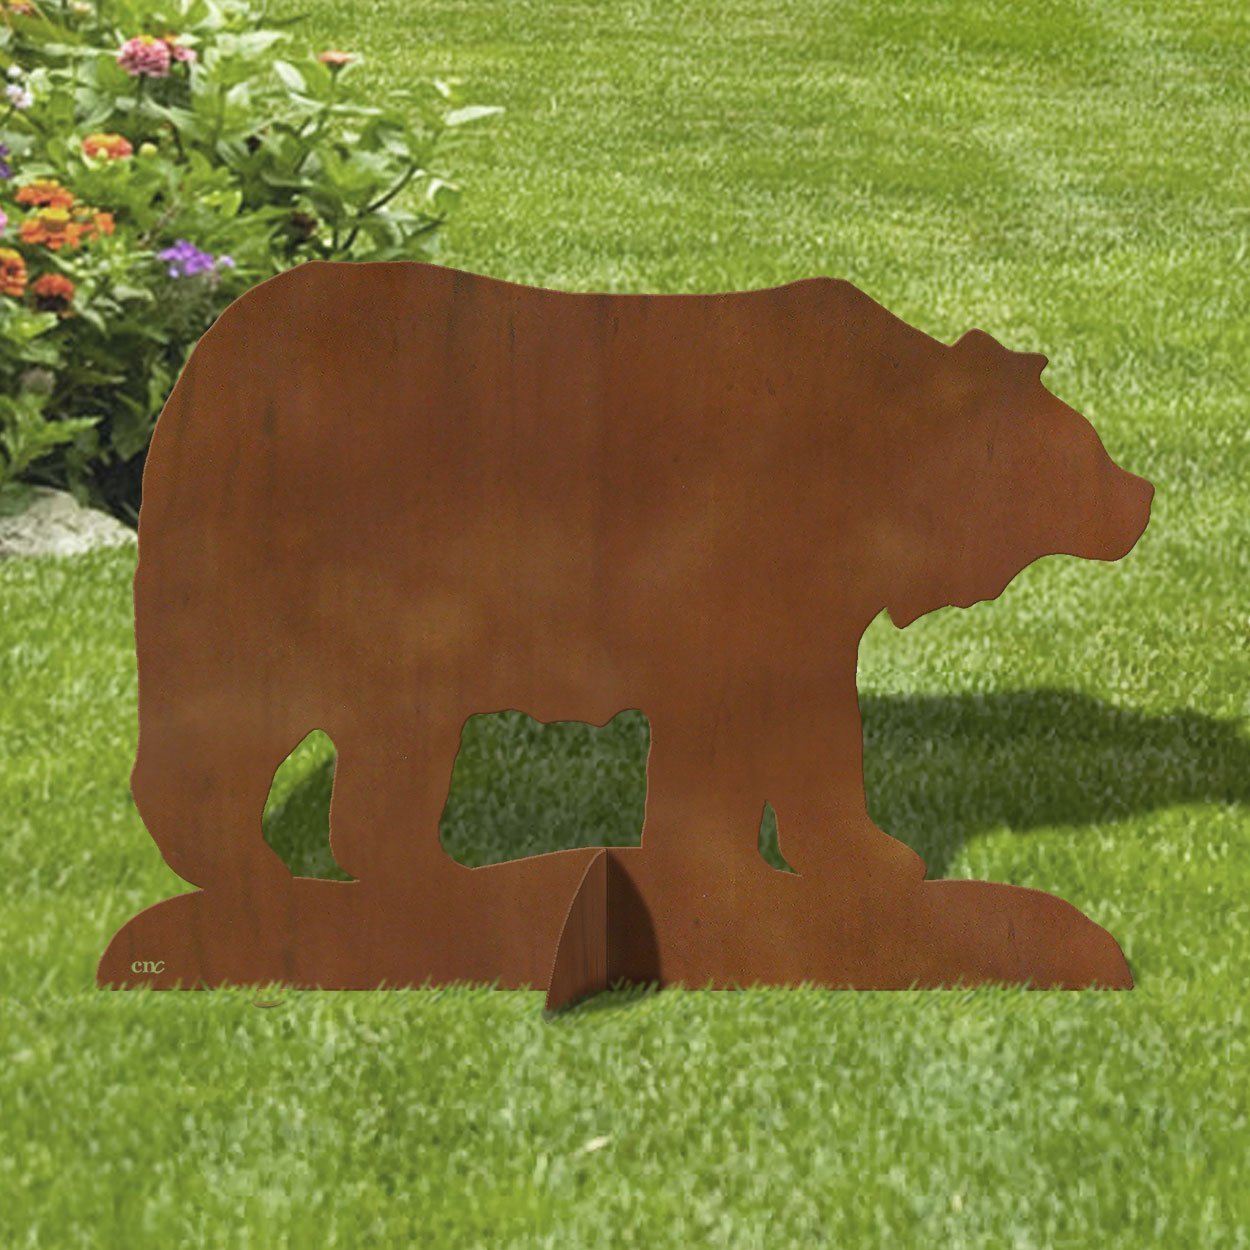 603045 - 36in W Bear Metal Garden Statue Yard Art